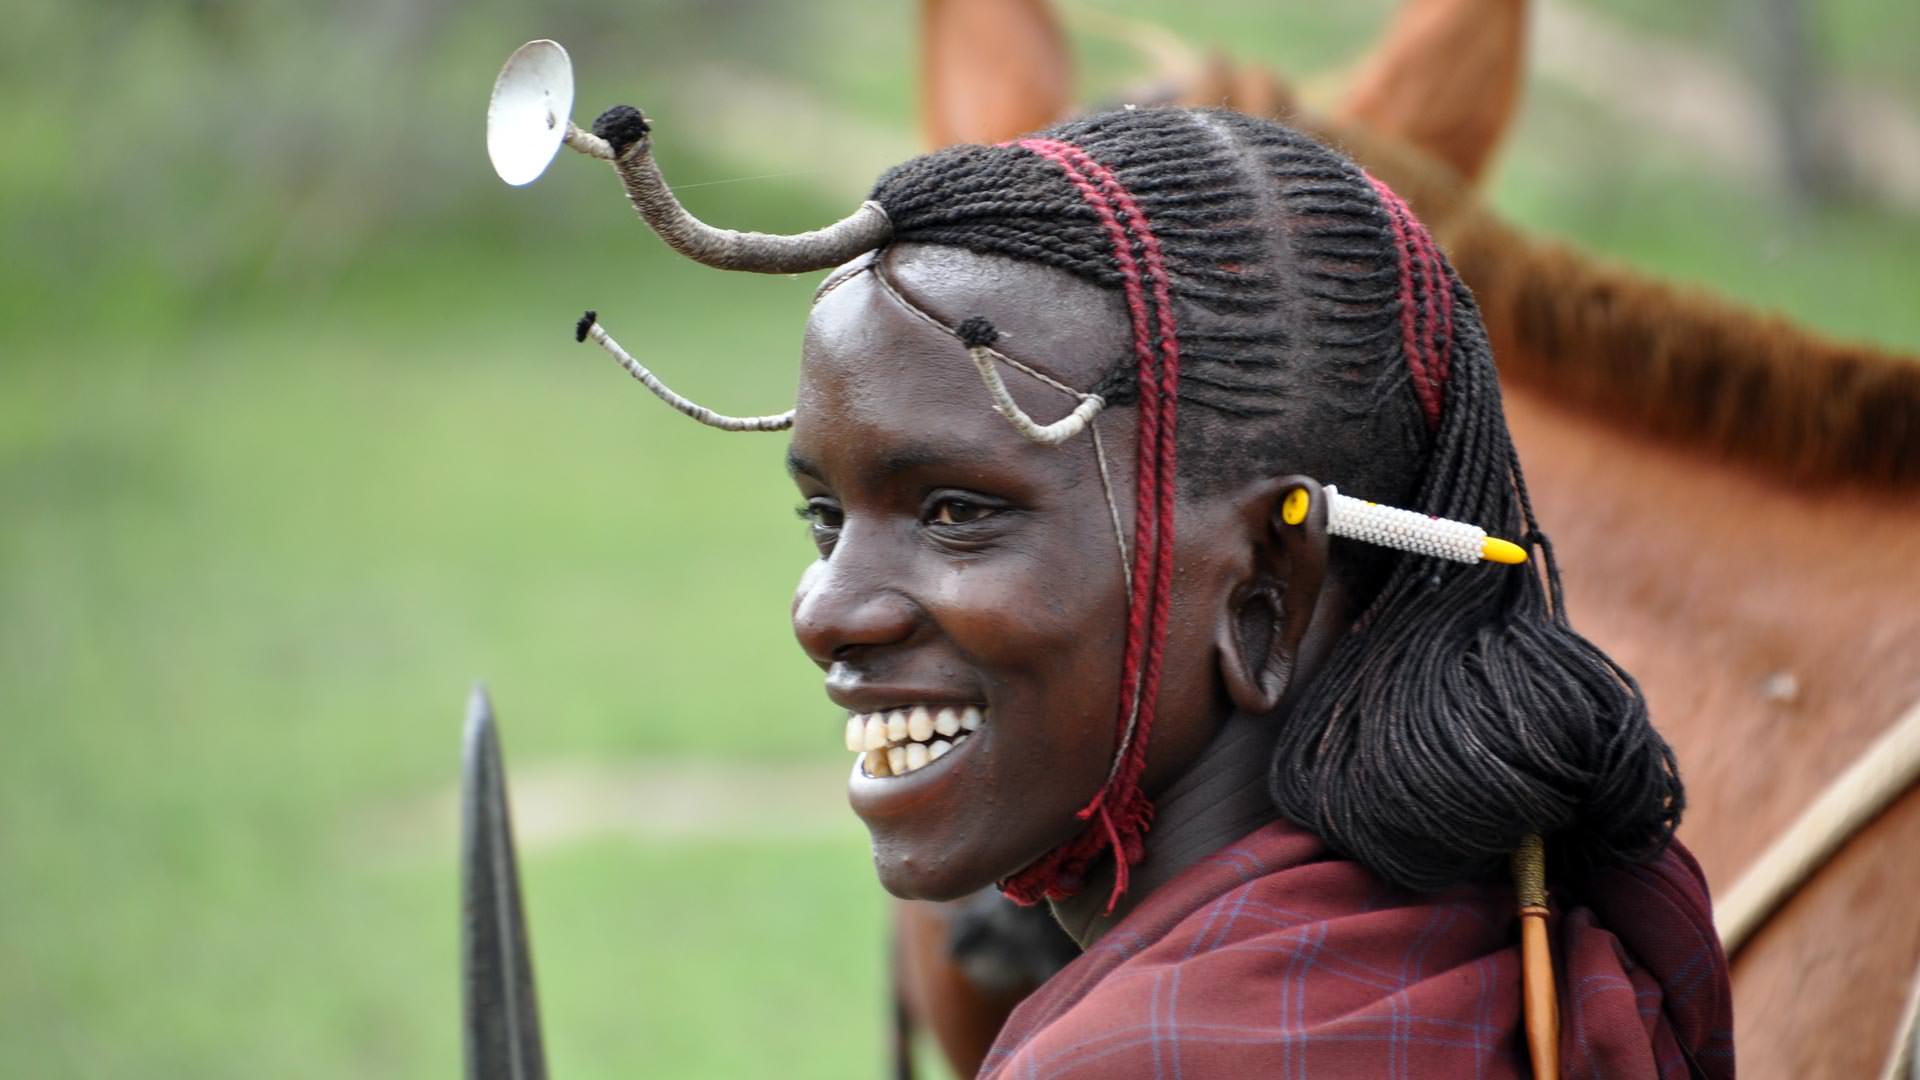 Smiling Masai